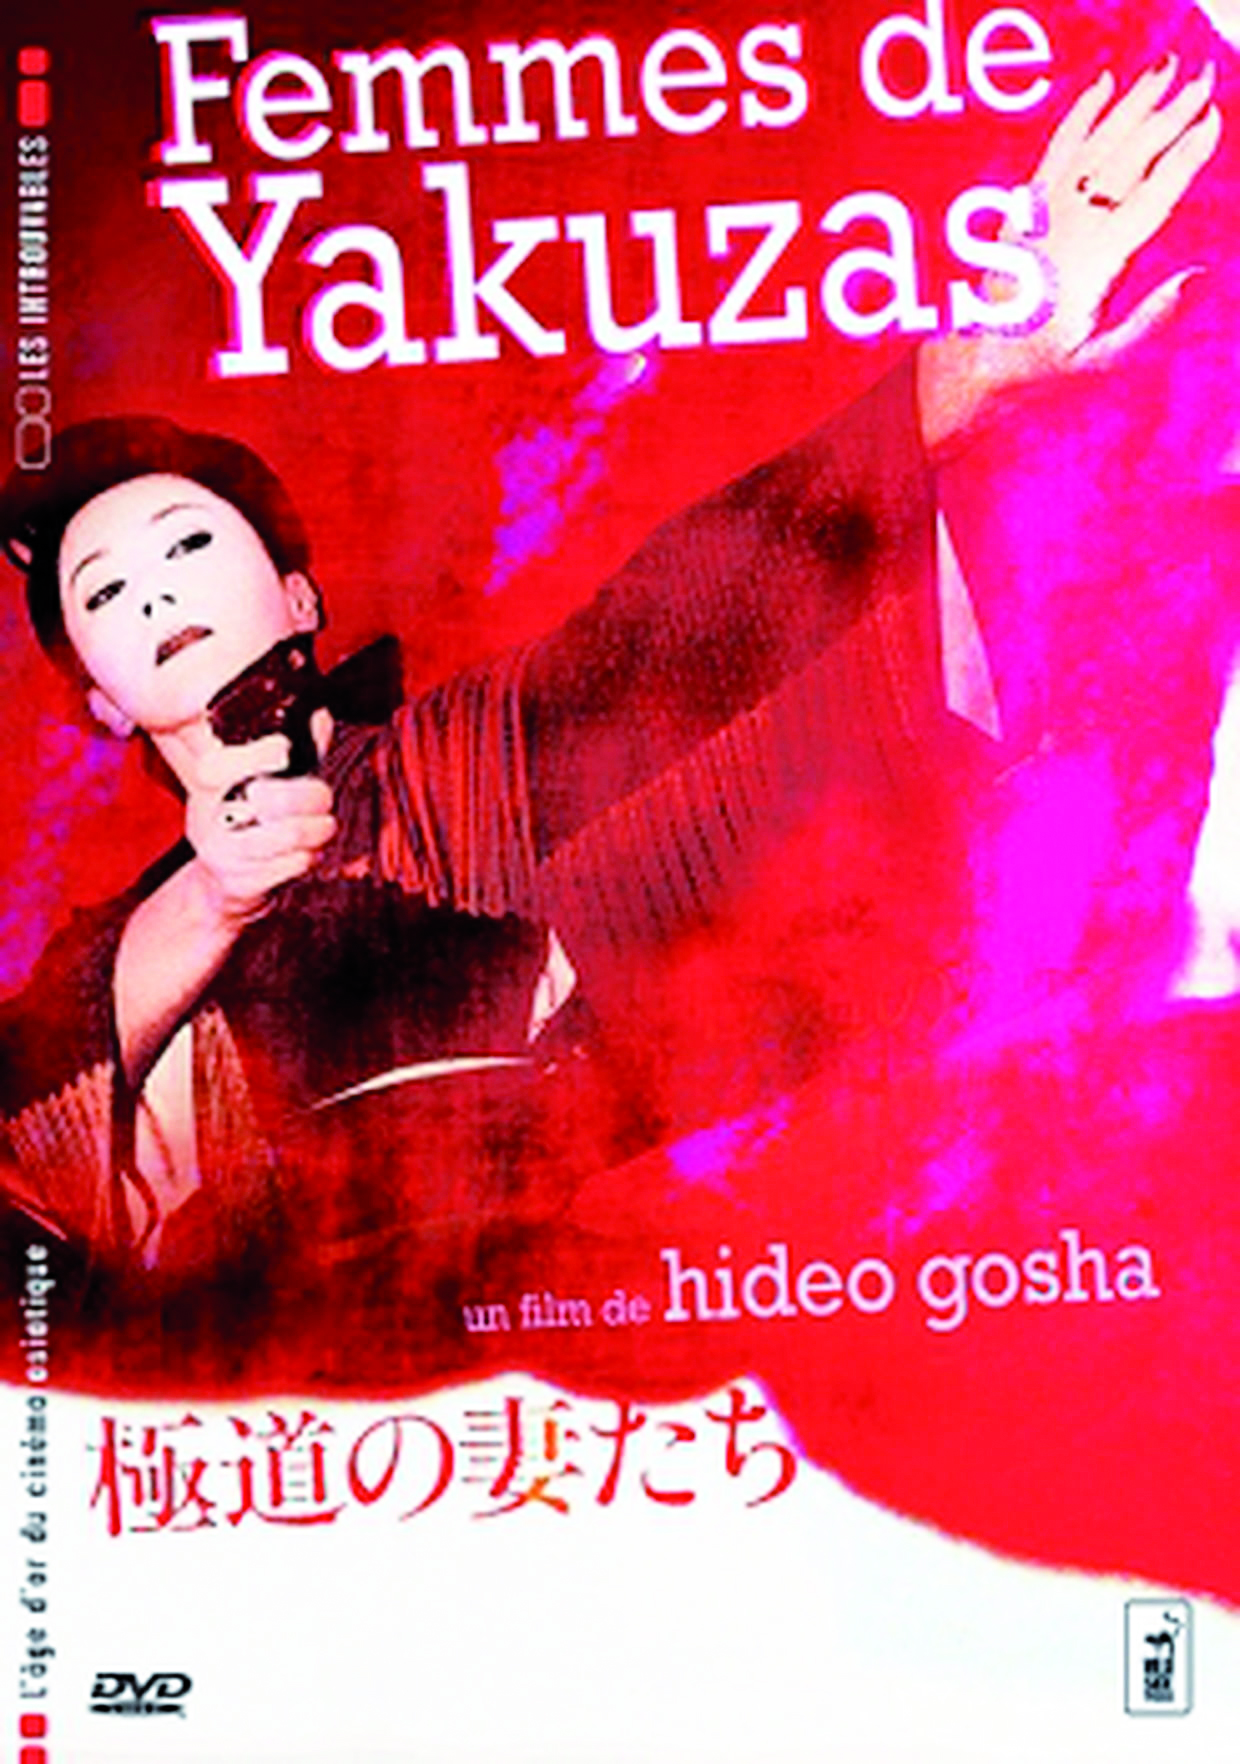 Cycle Yakuzas- Projection du film "Femmes de Yakuzas"de Hideo Gosha le Jeudi 27 février à 20h30 à la Cinémathèque de Corse. 